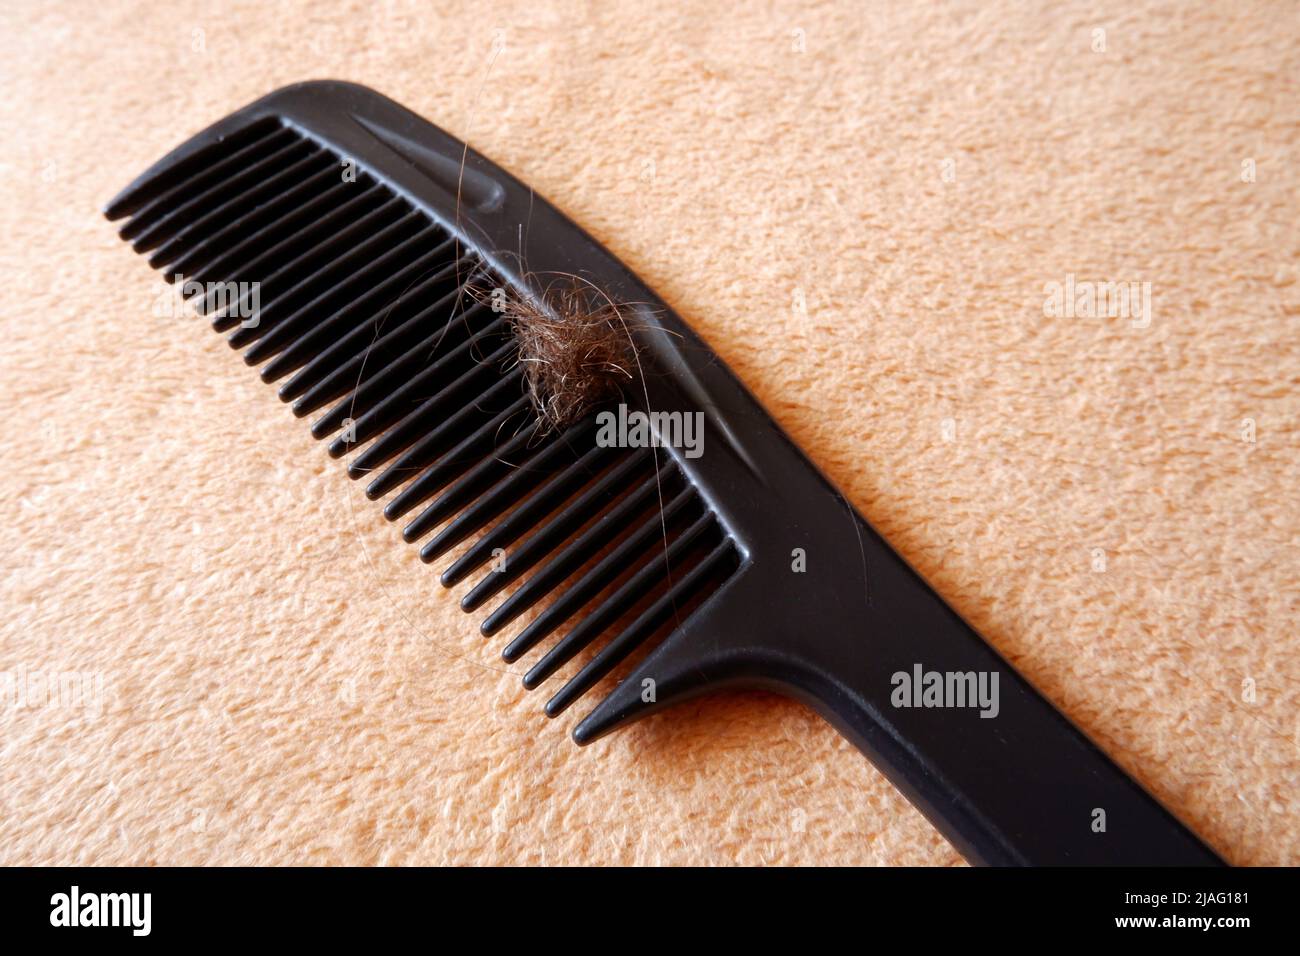 Ein Kamm mit verfilzten Haaren liegt auf einem Handtuch Stockfoto